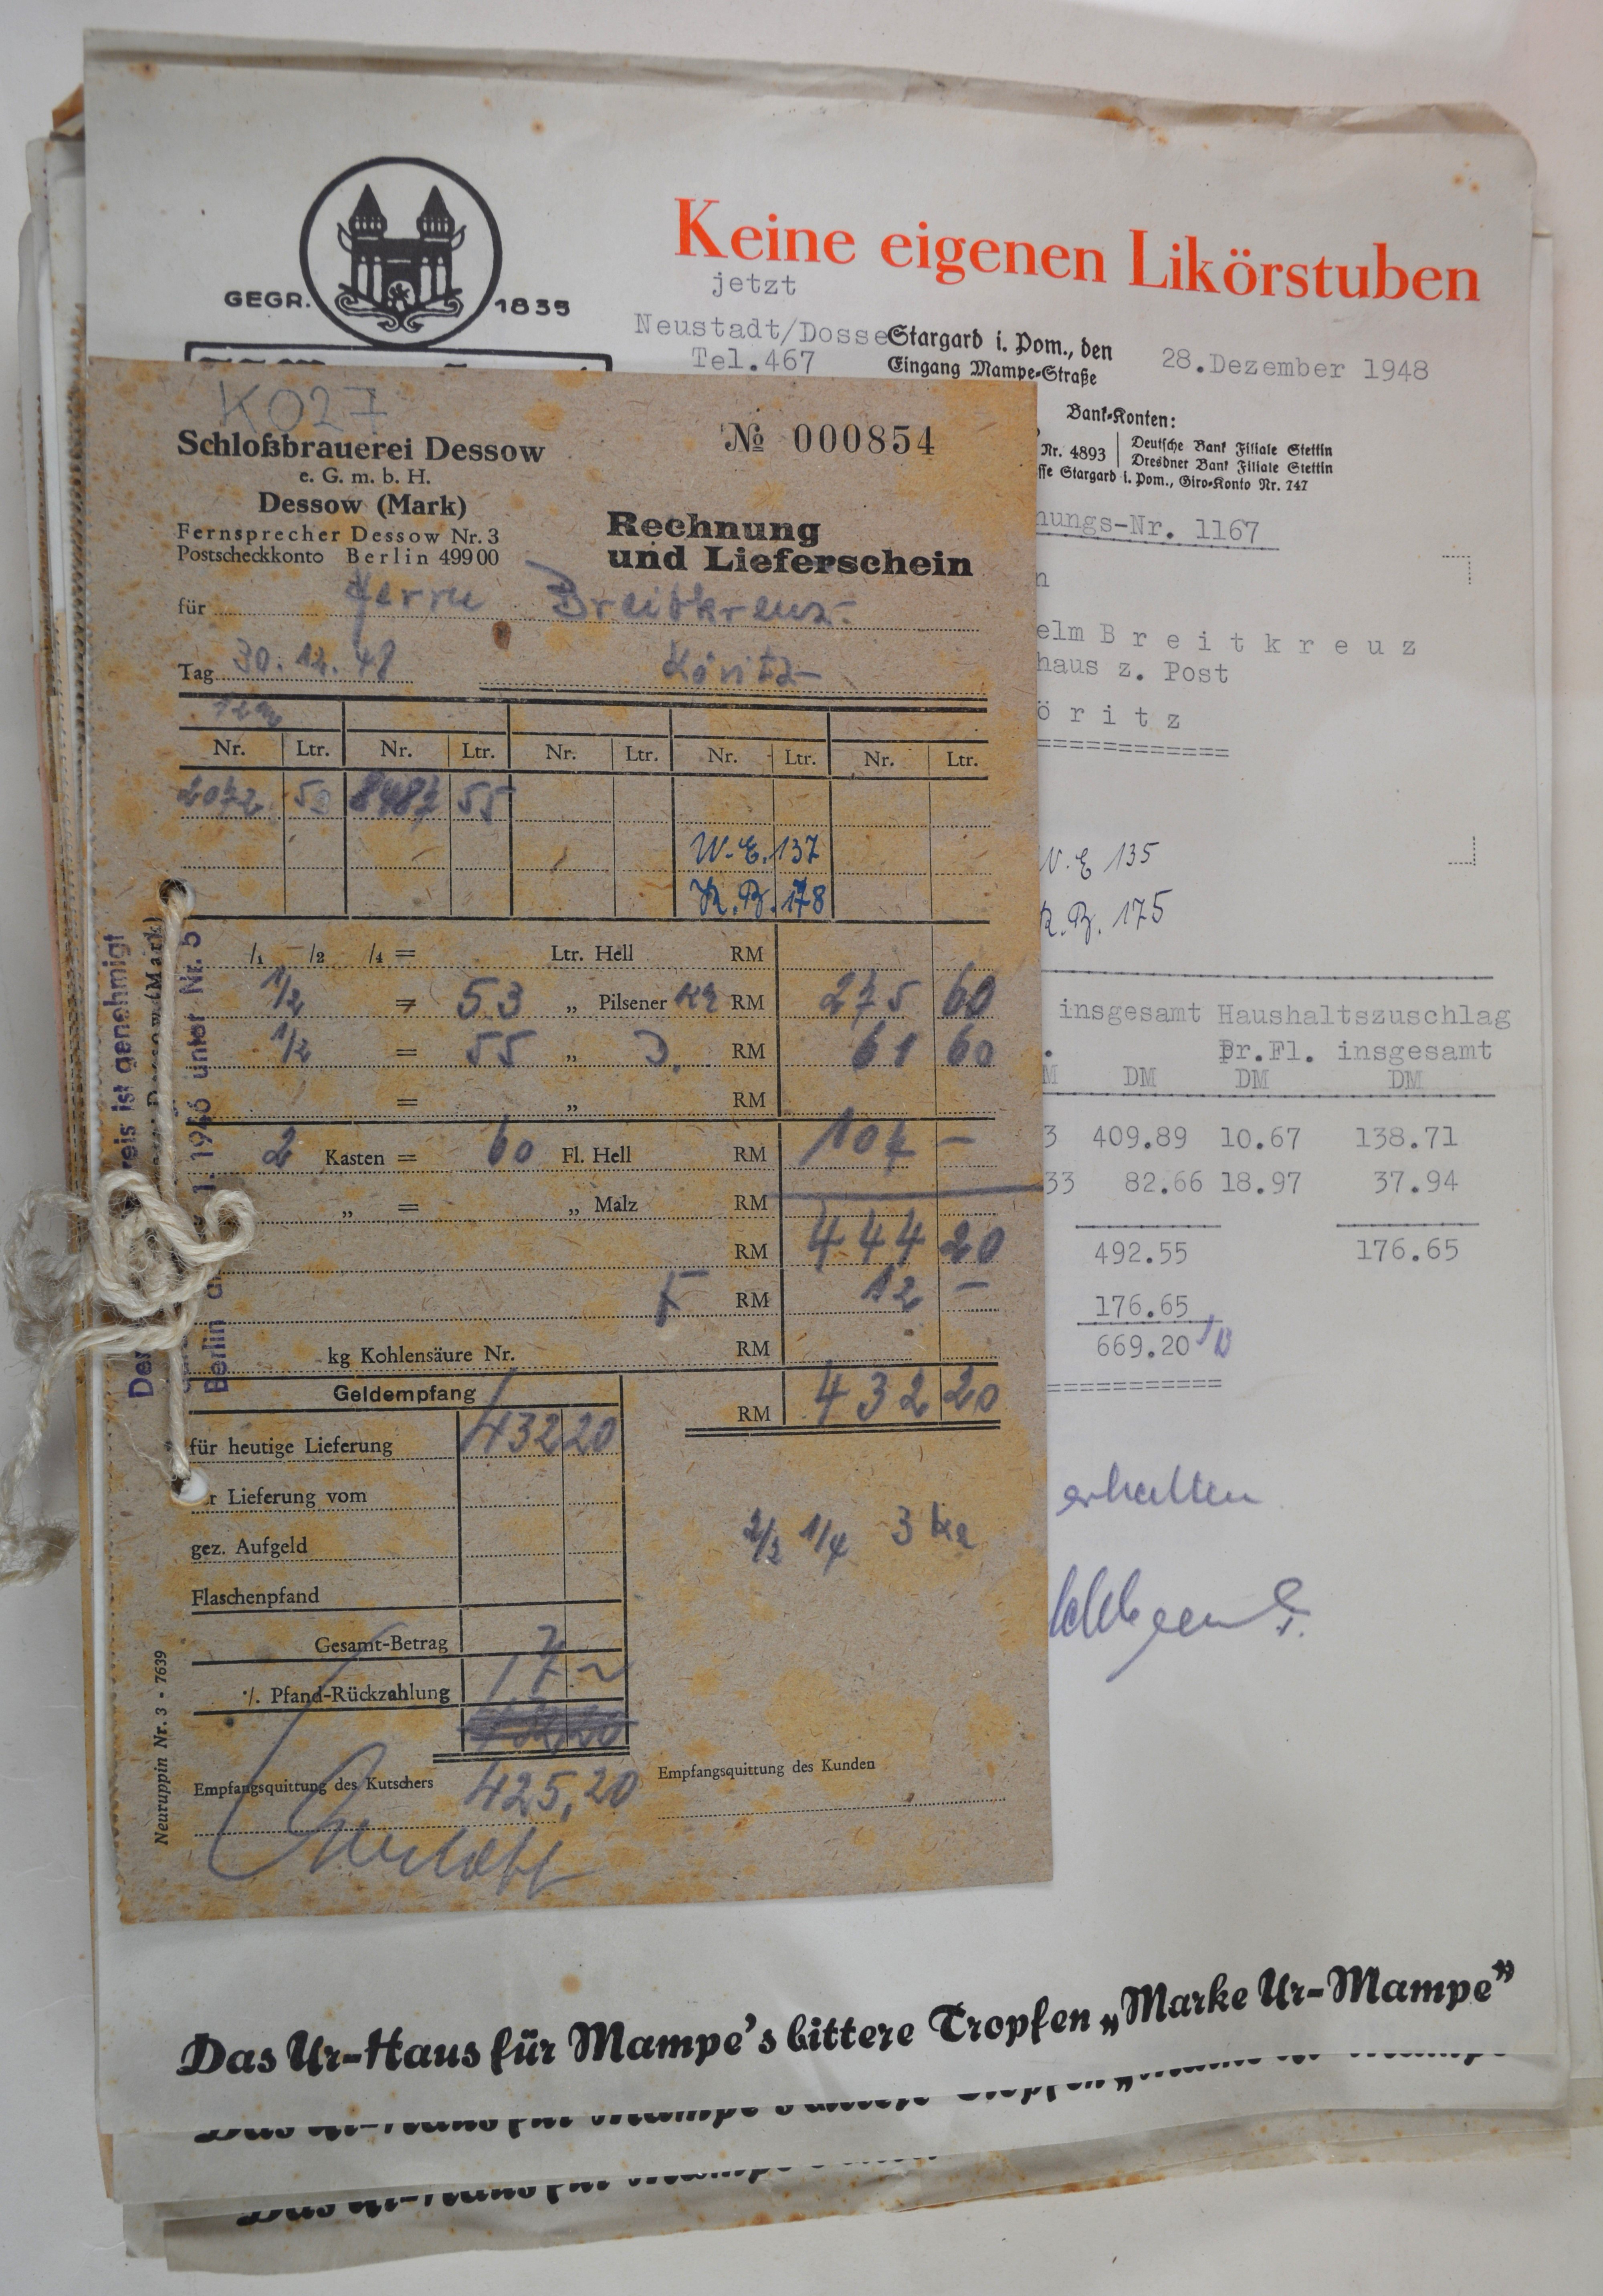 Rechnungen für Wilhelm und Else Breitkreuz aus dem Jahr 1948, Band 1 (DDR Geschichtsmuseum im Dokumentationszentrum Perleberg CC BY-SA)